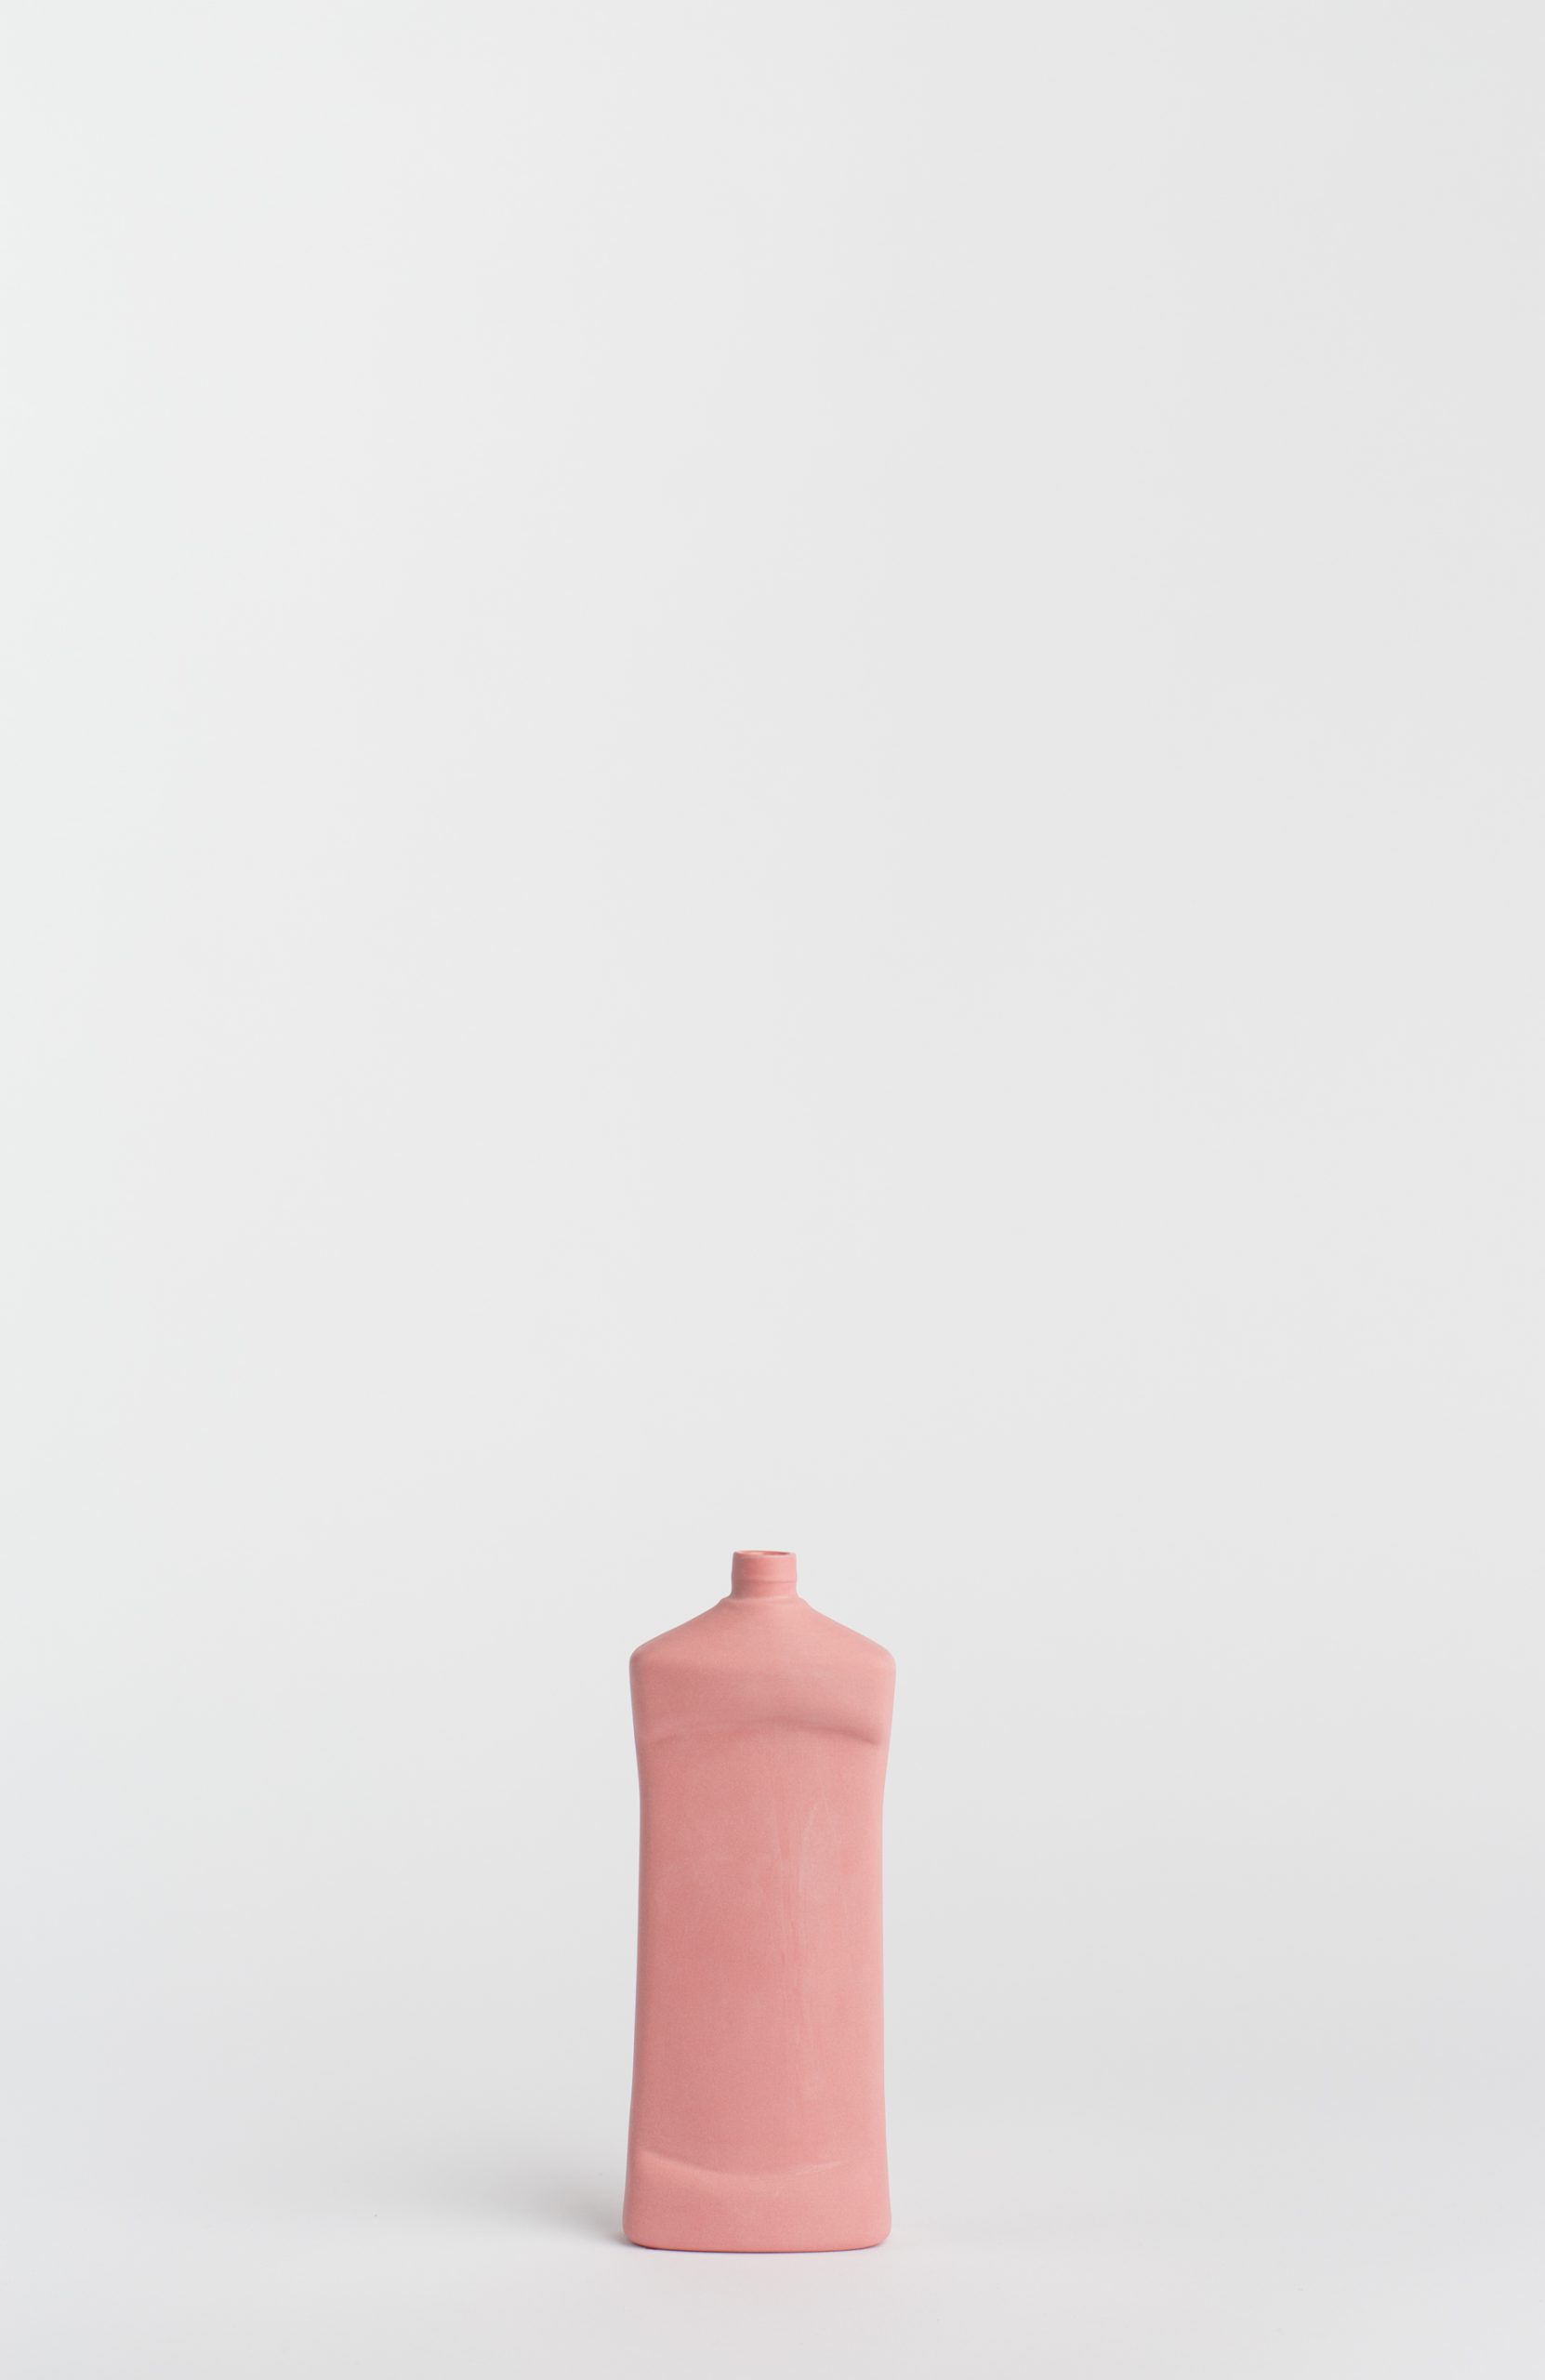 bottlevase #14 pink